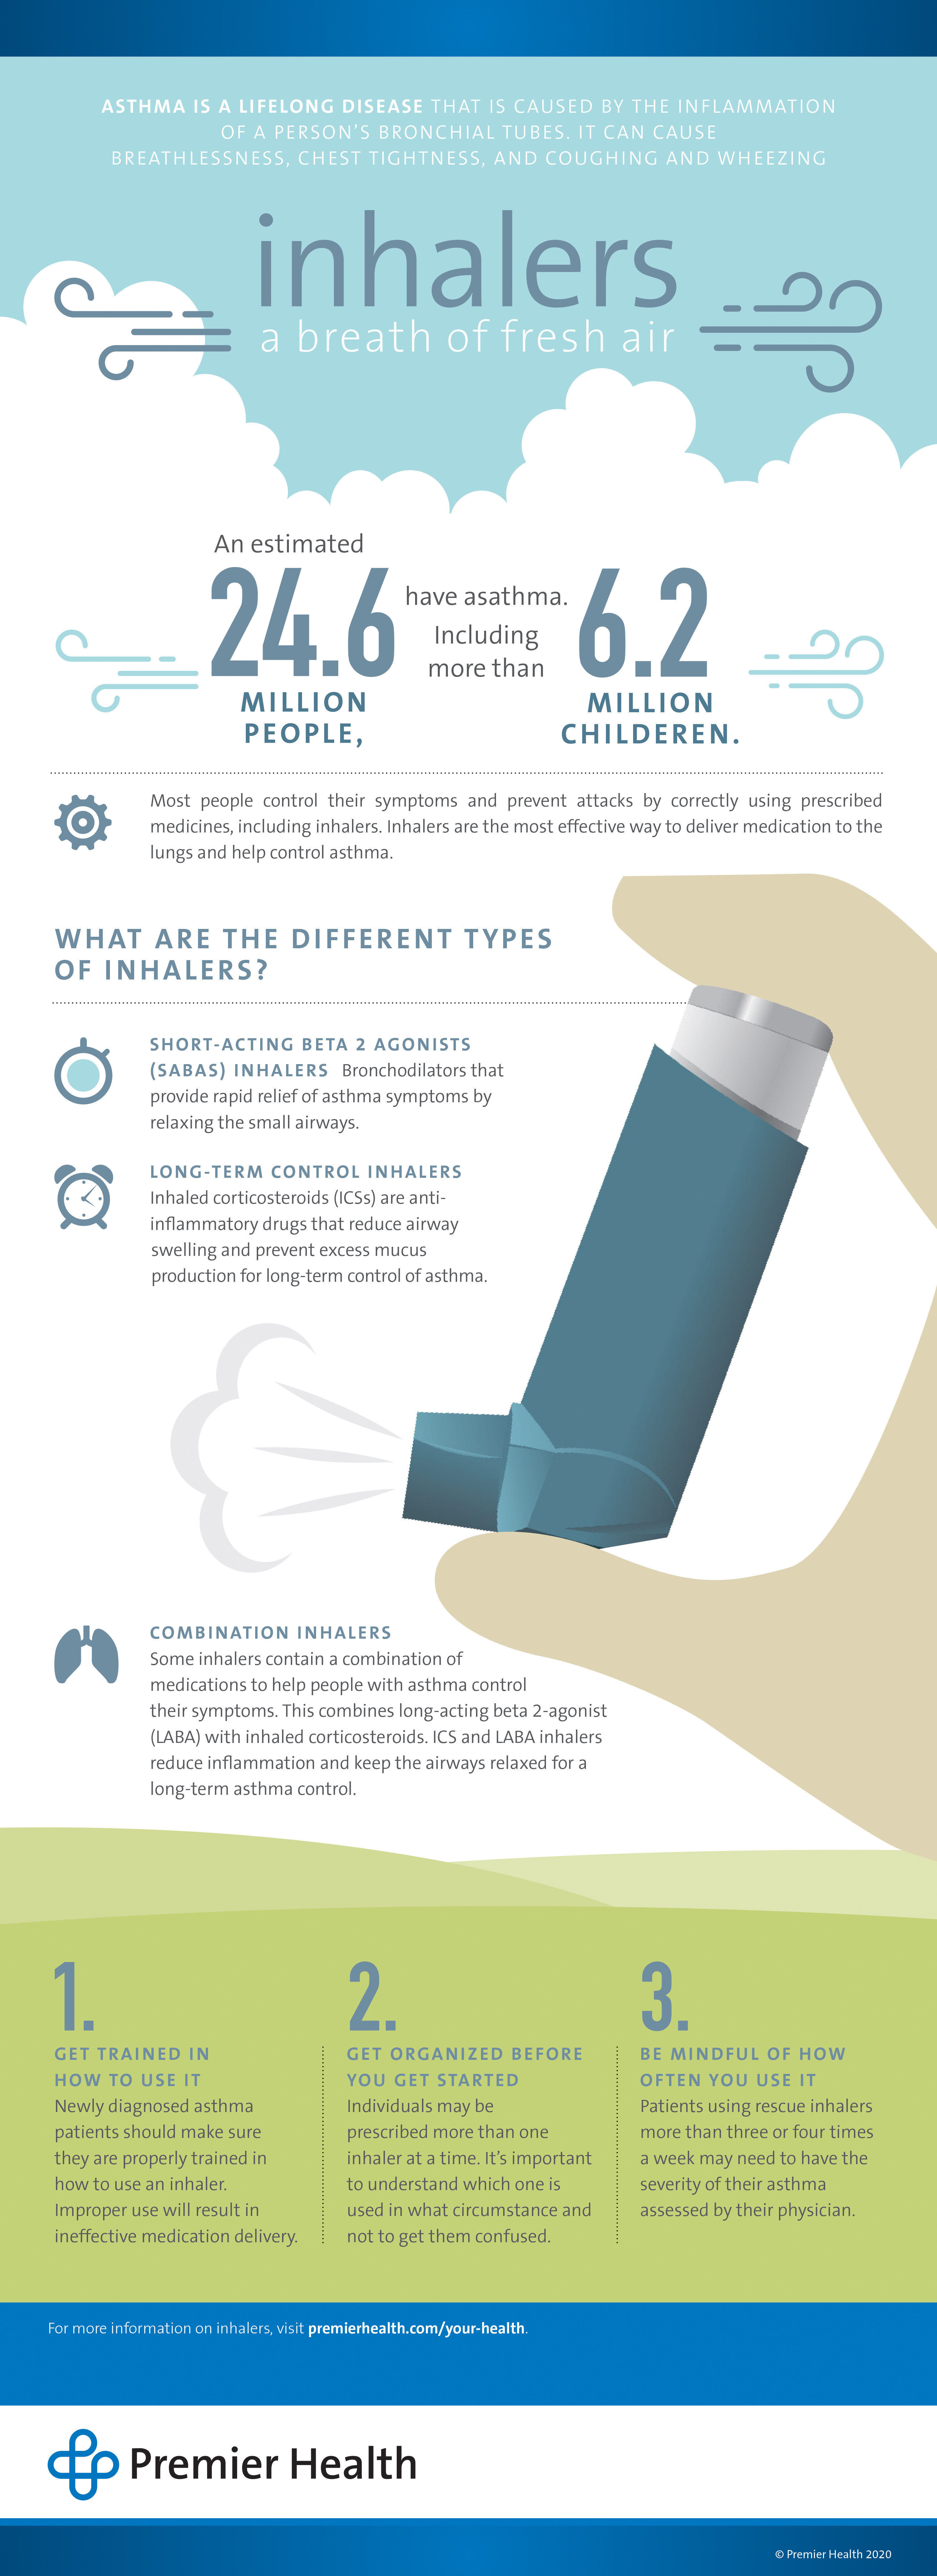 Inhalers: A breath of fresh air